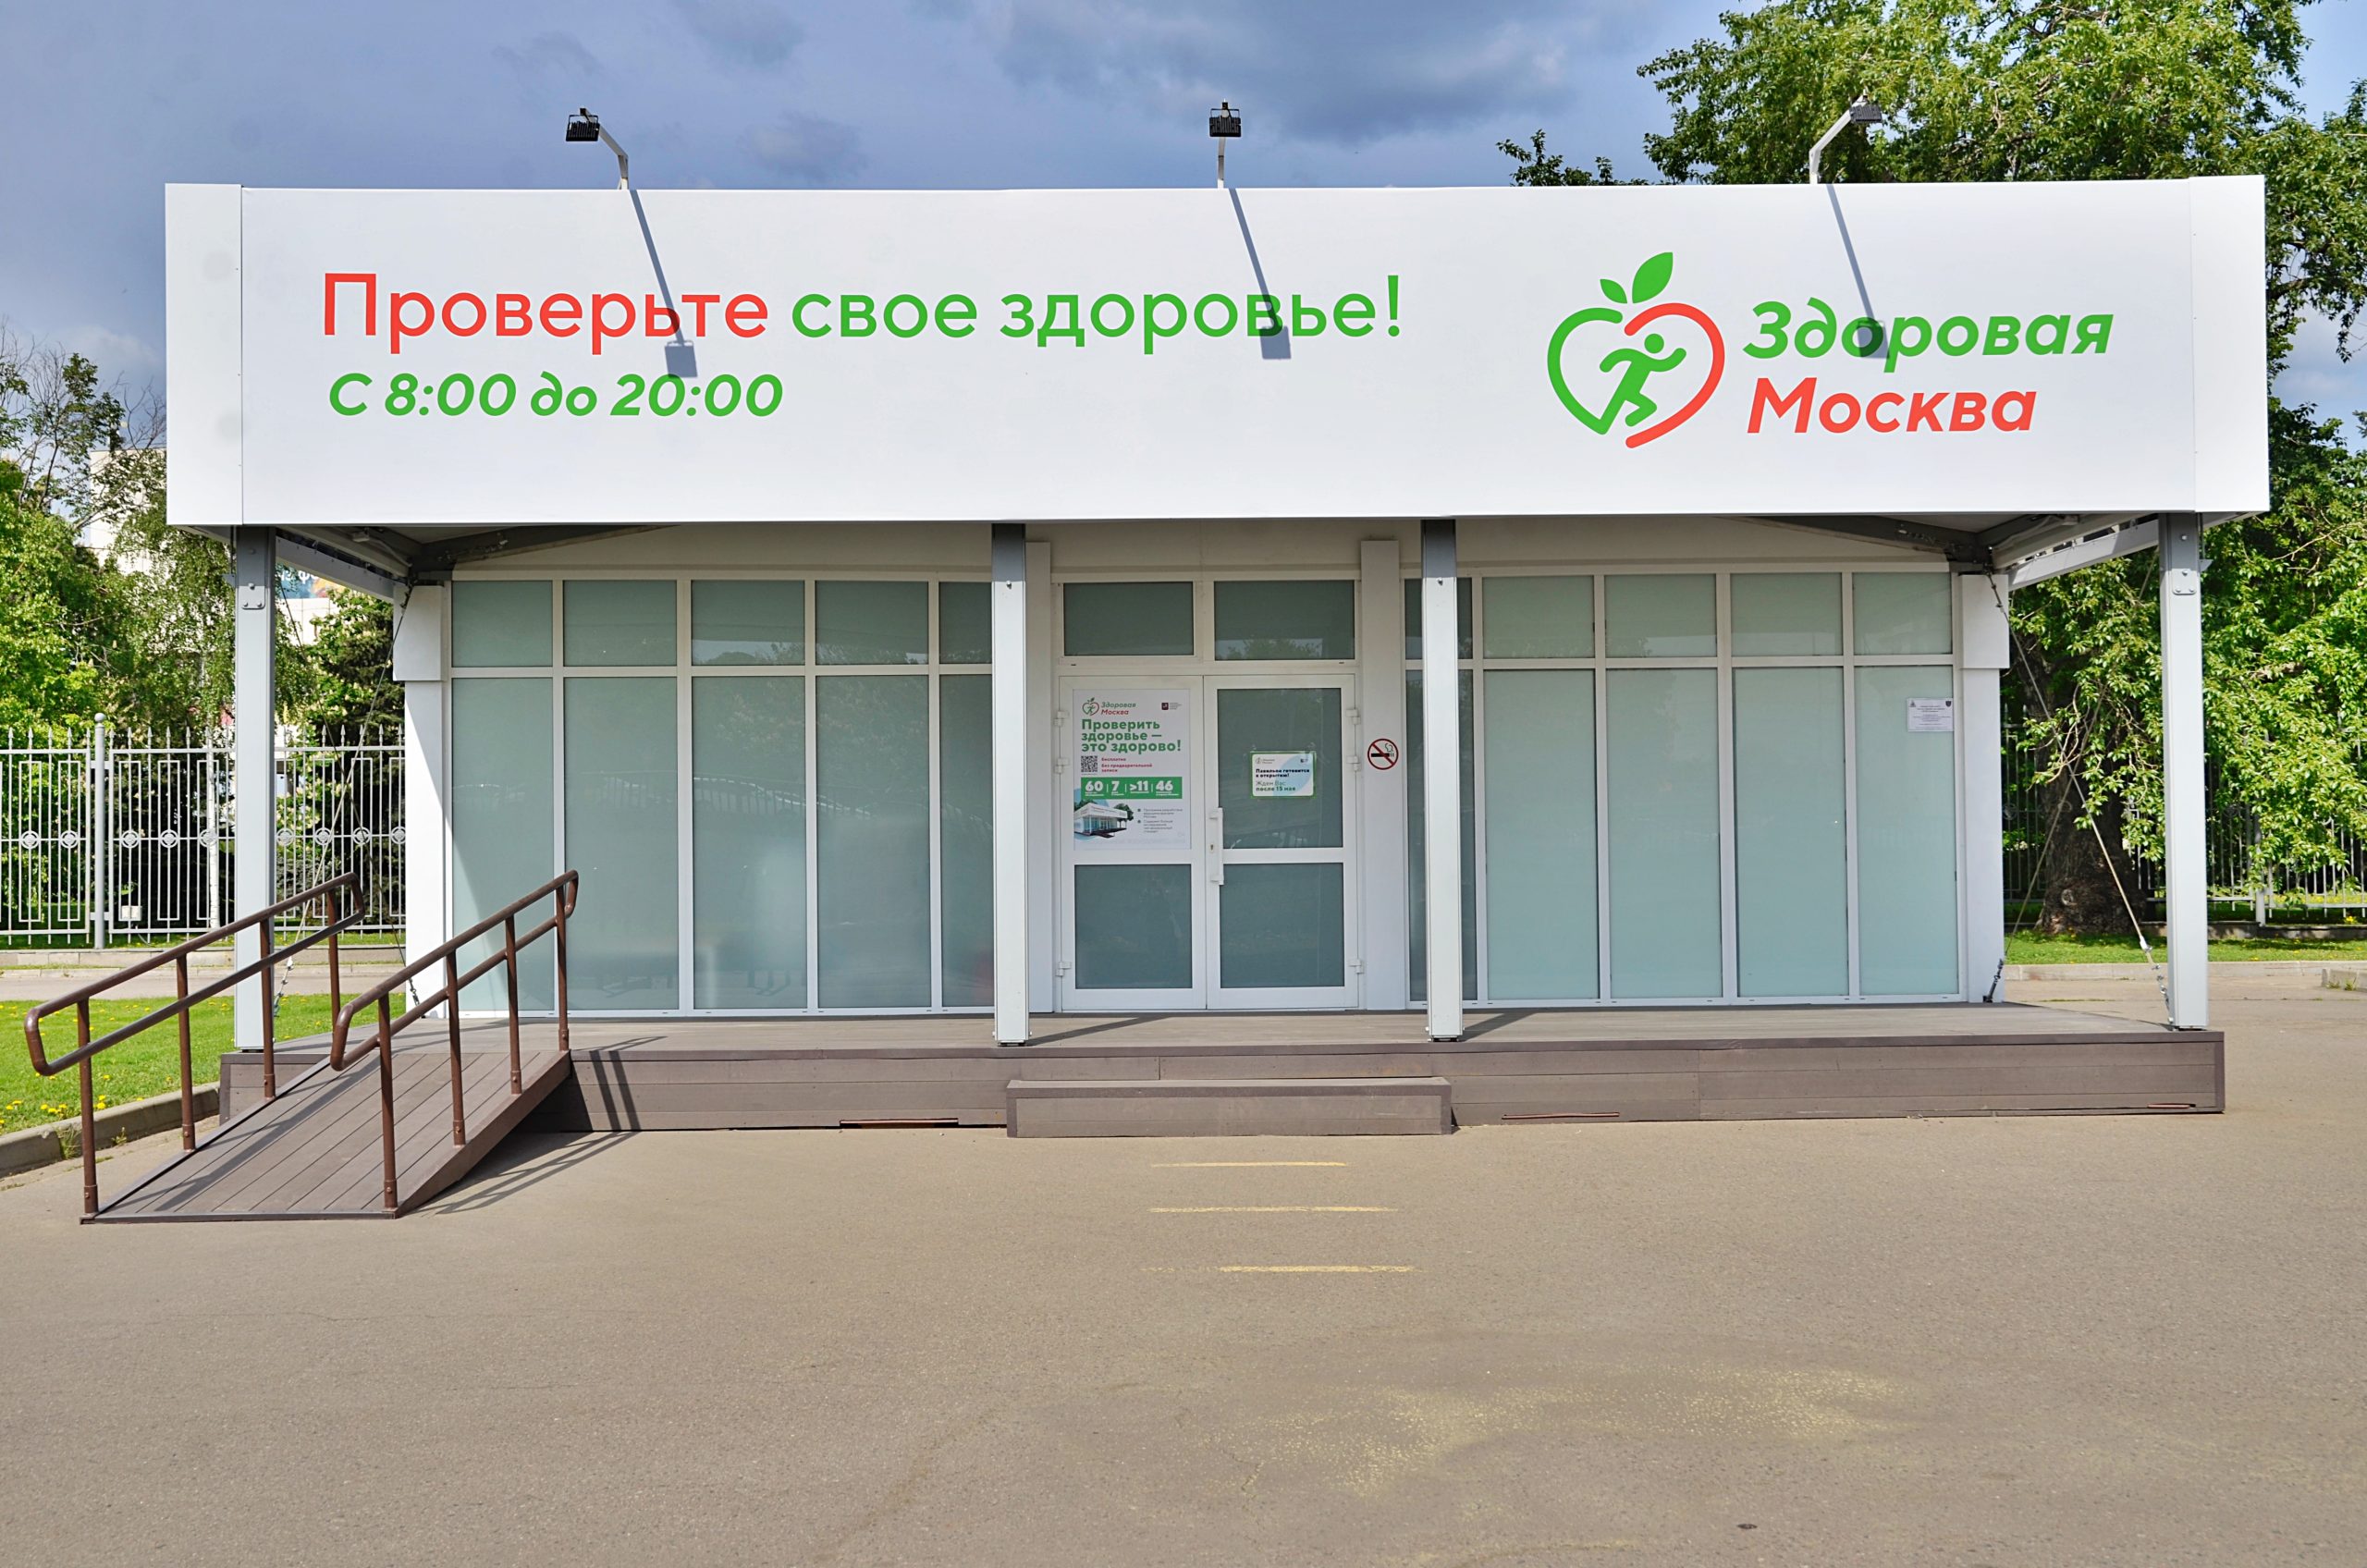 Бесплатное обследование в павильонах «Здоровая Москва» будет доступно для горожан в сентябре